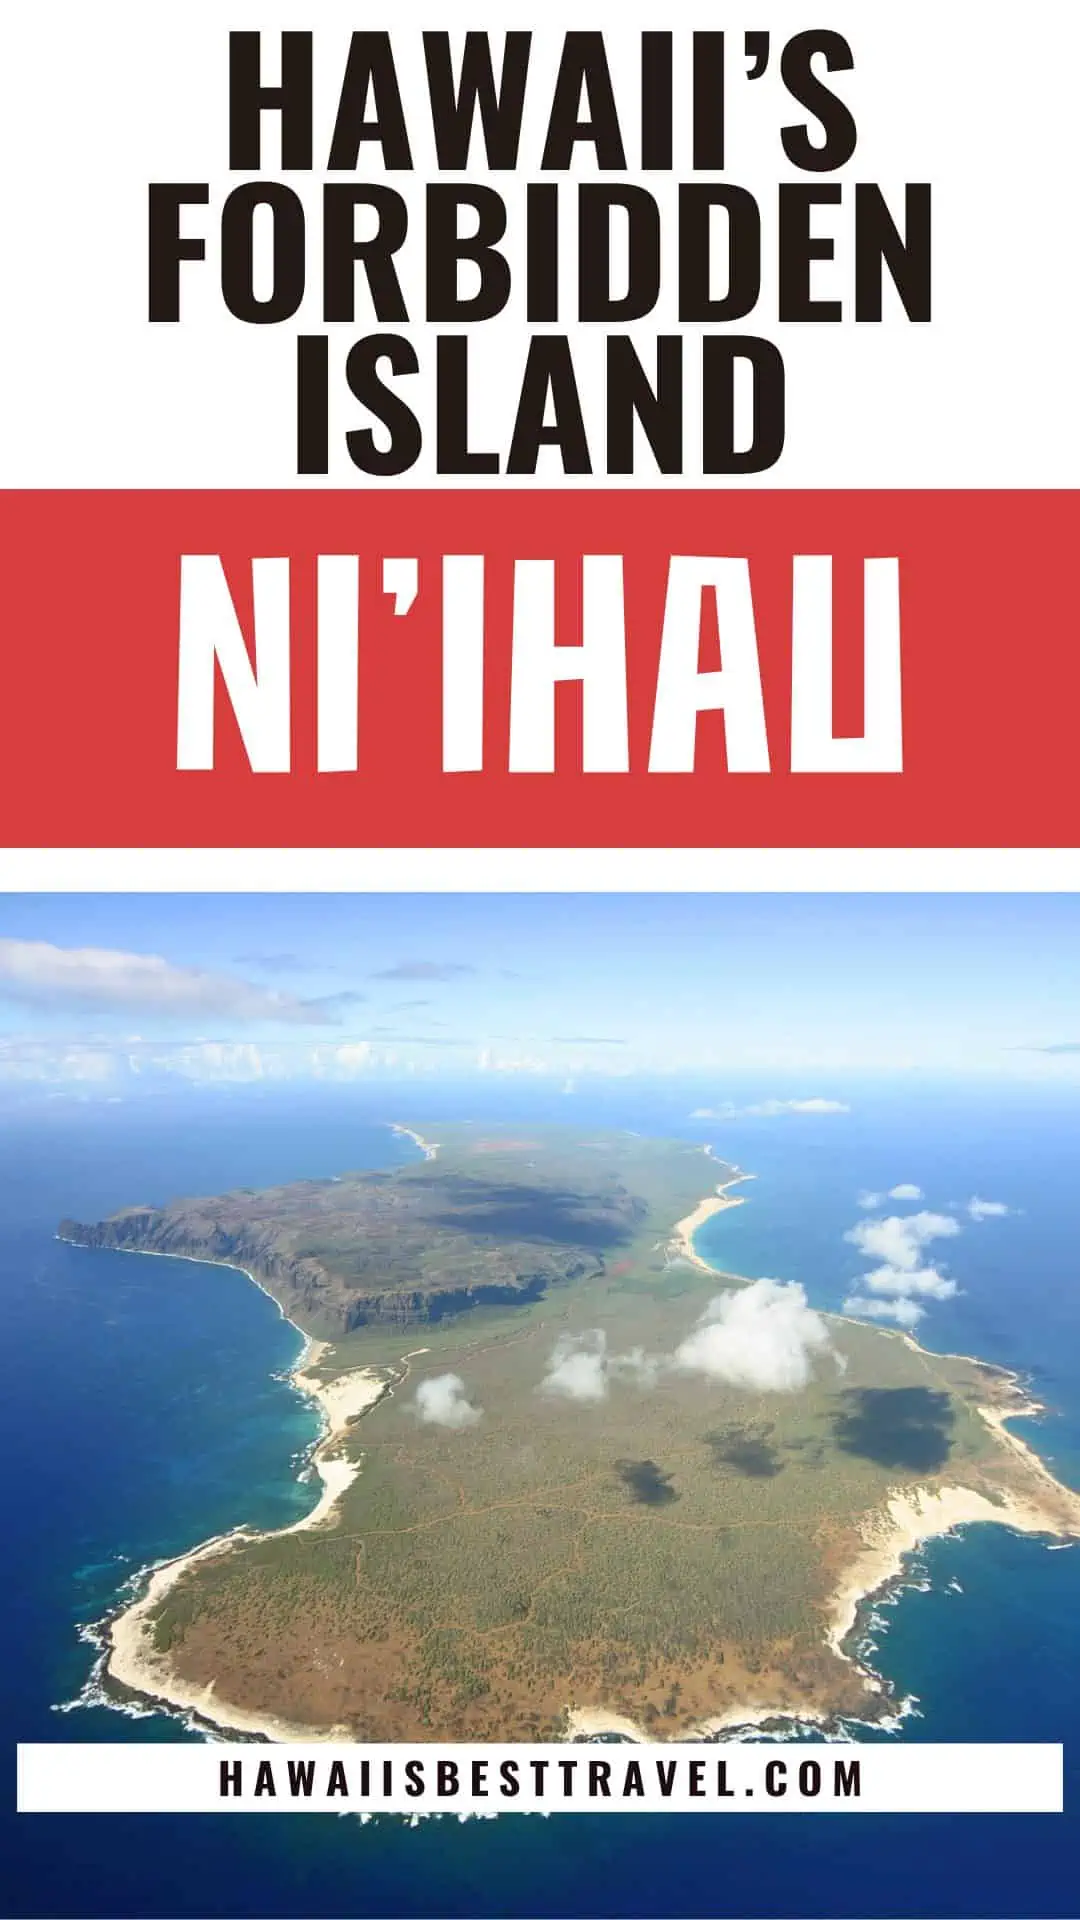 hawaiis forbidden island niihau - pin